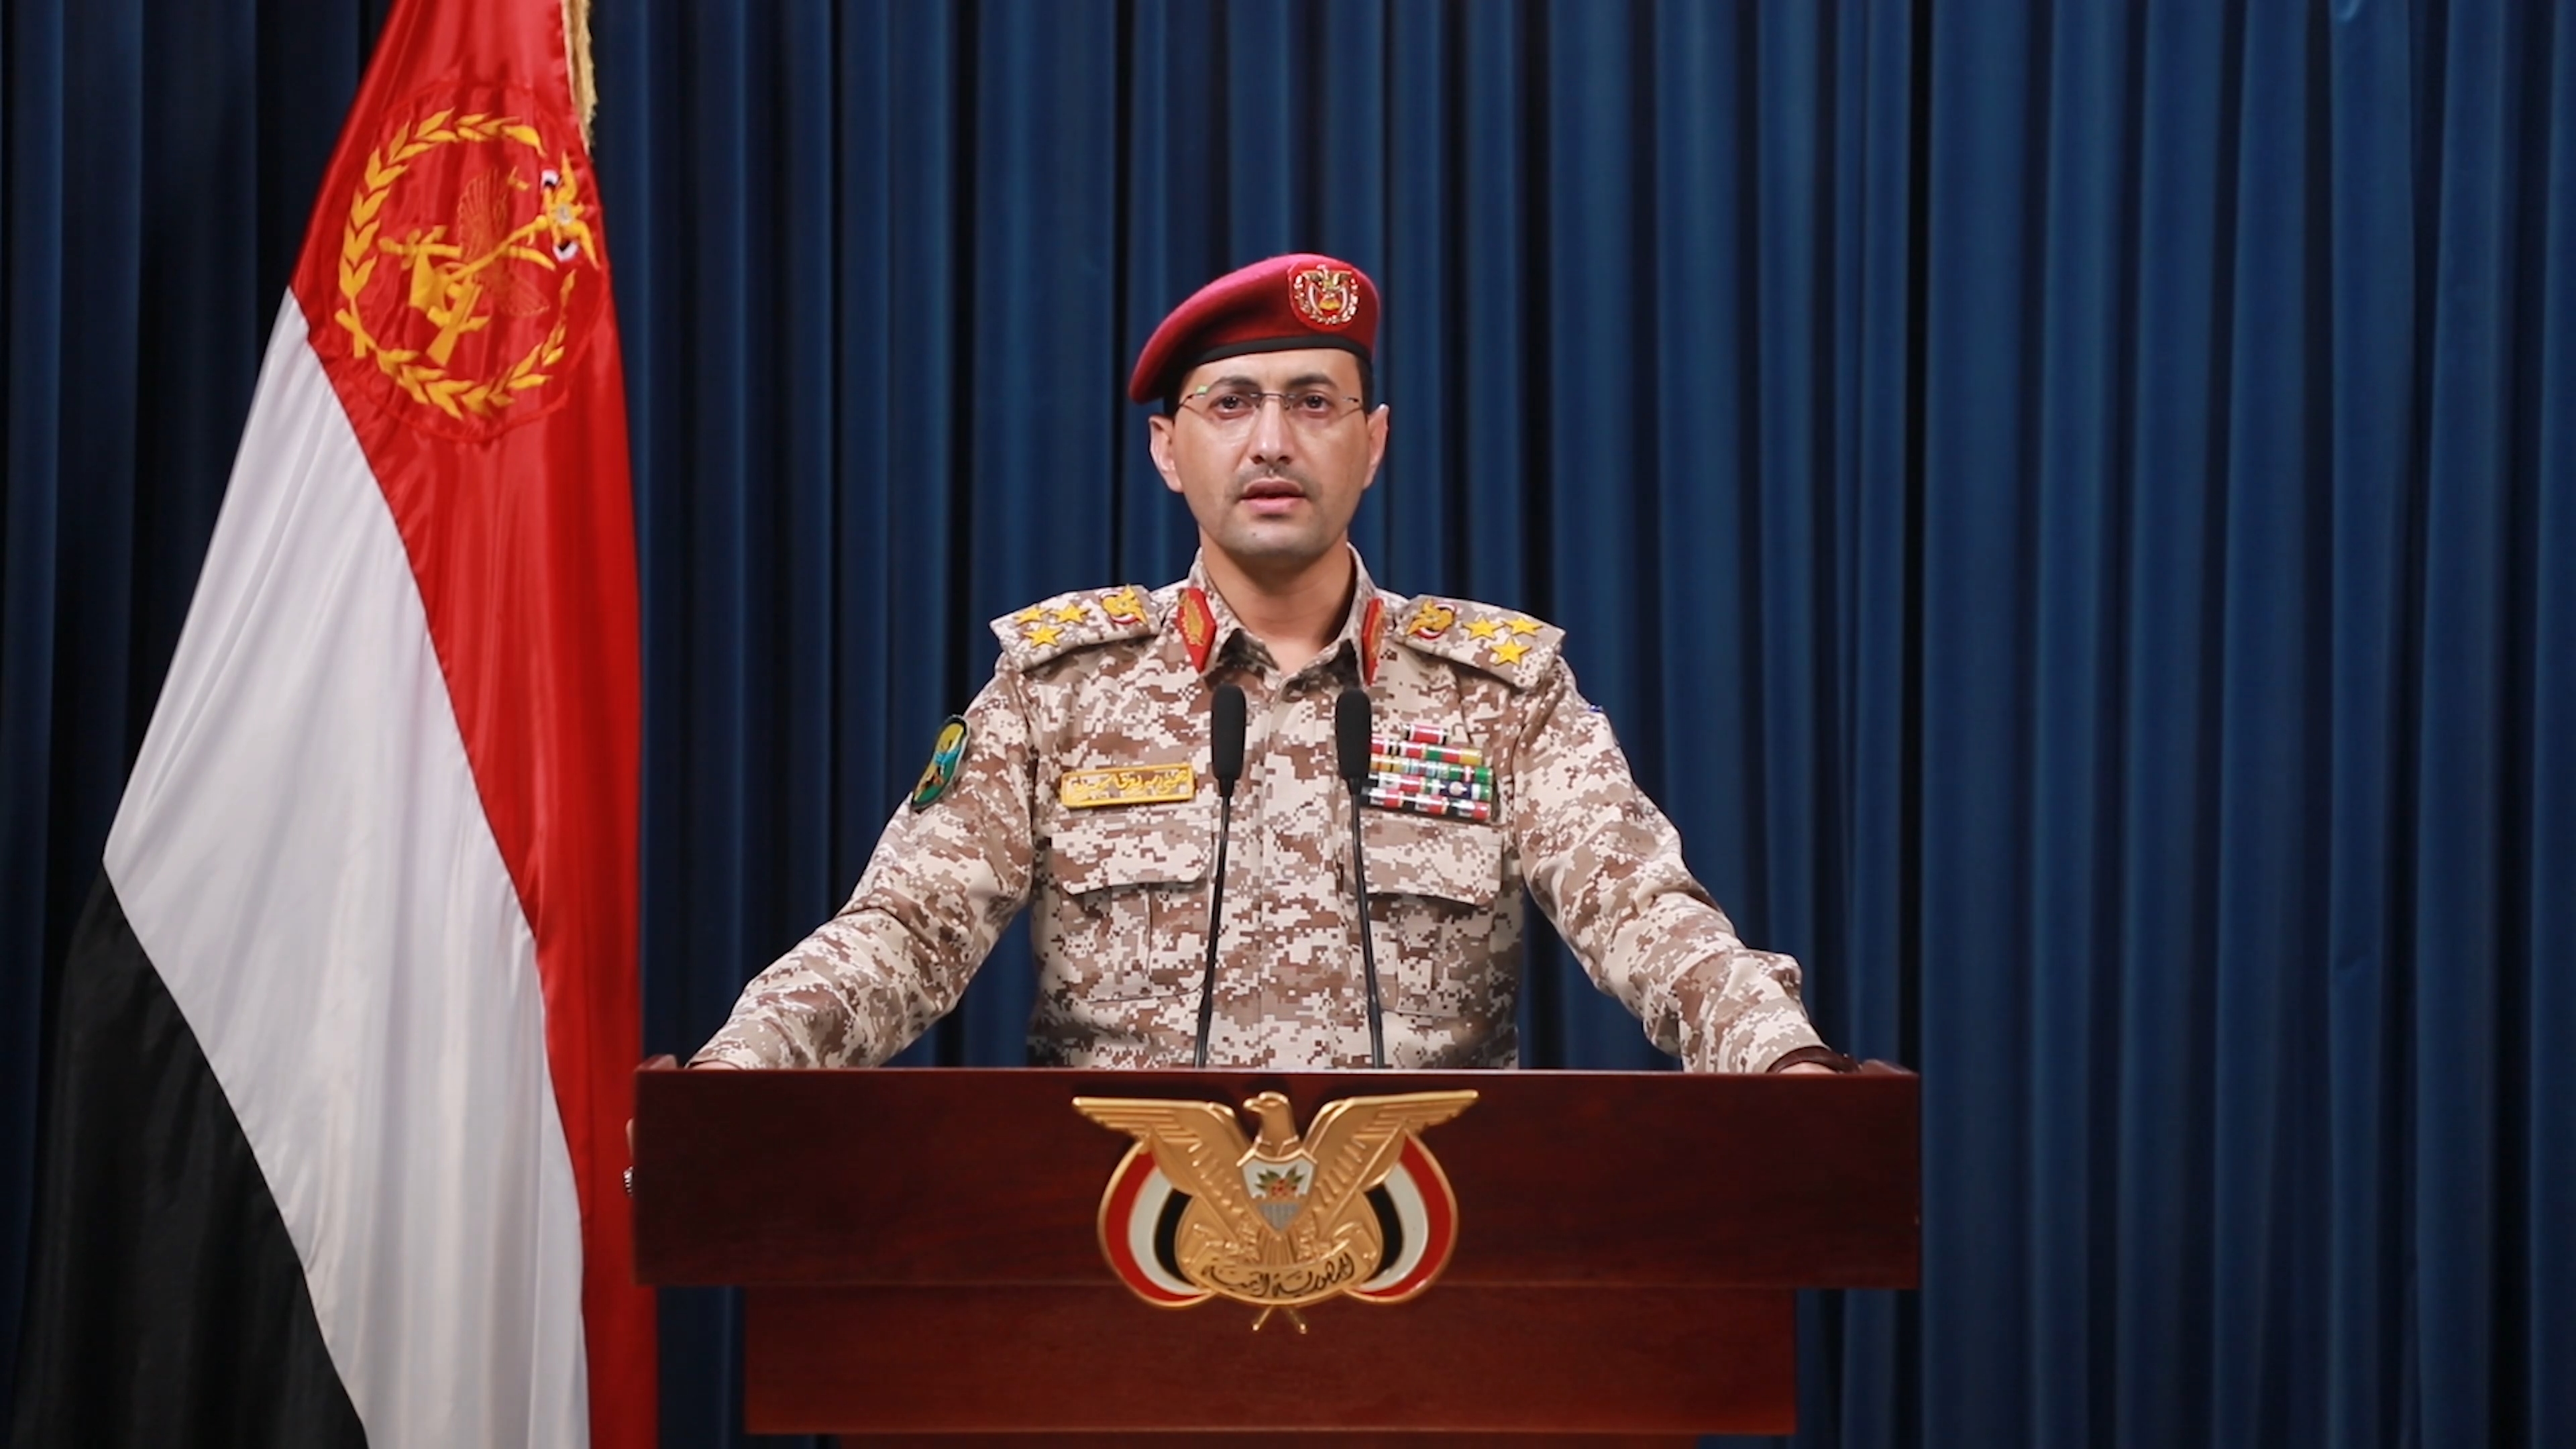 القوات المسلحة اليمنية تعليقا على مجازر العدو الأخيرة: سنعمل على اتخاذ ما يلزم من خطوات وإجراءات للانتصار الفعلي لدماء الشعب الفلسطيني